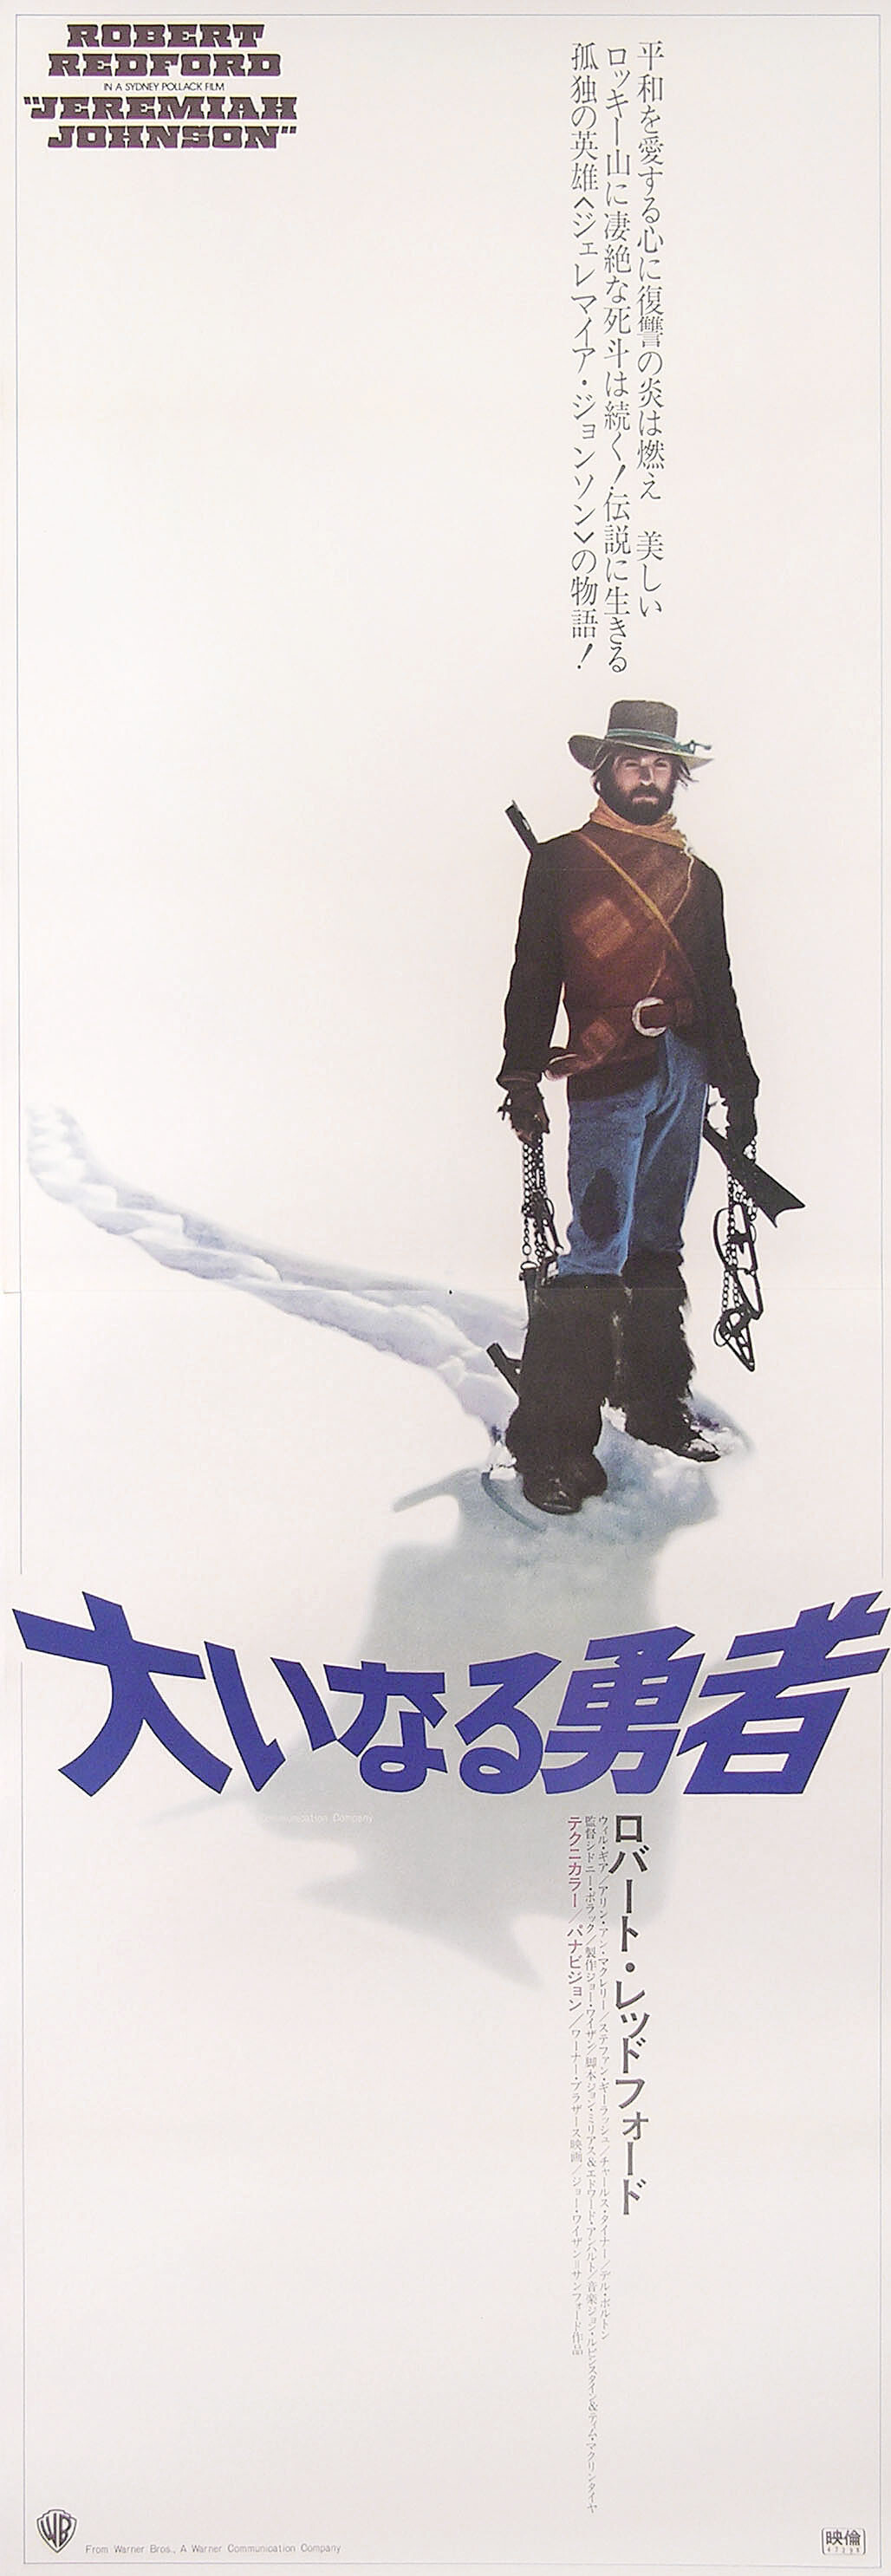 Иеремия Джонсон (Jeremiah Johnson, 1972), режиссёр Сидни Поллак, минималистичный постер к фильму (Япония, 1972 год)